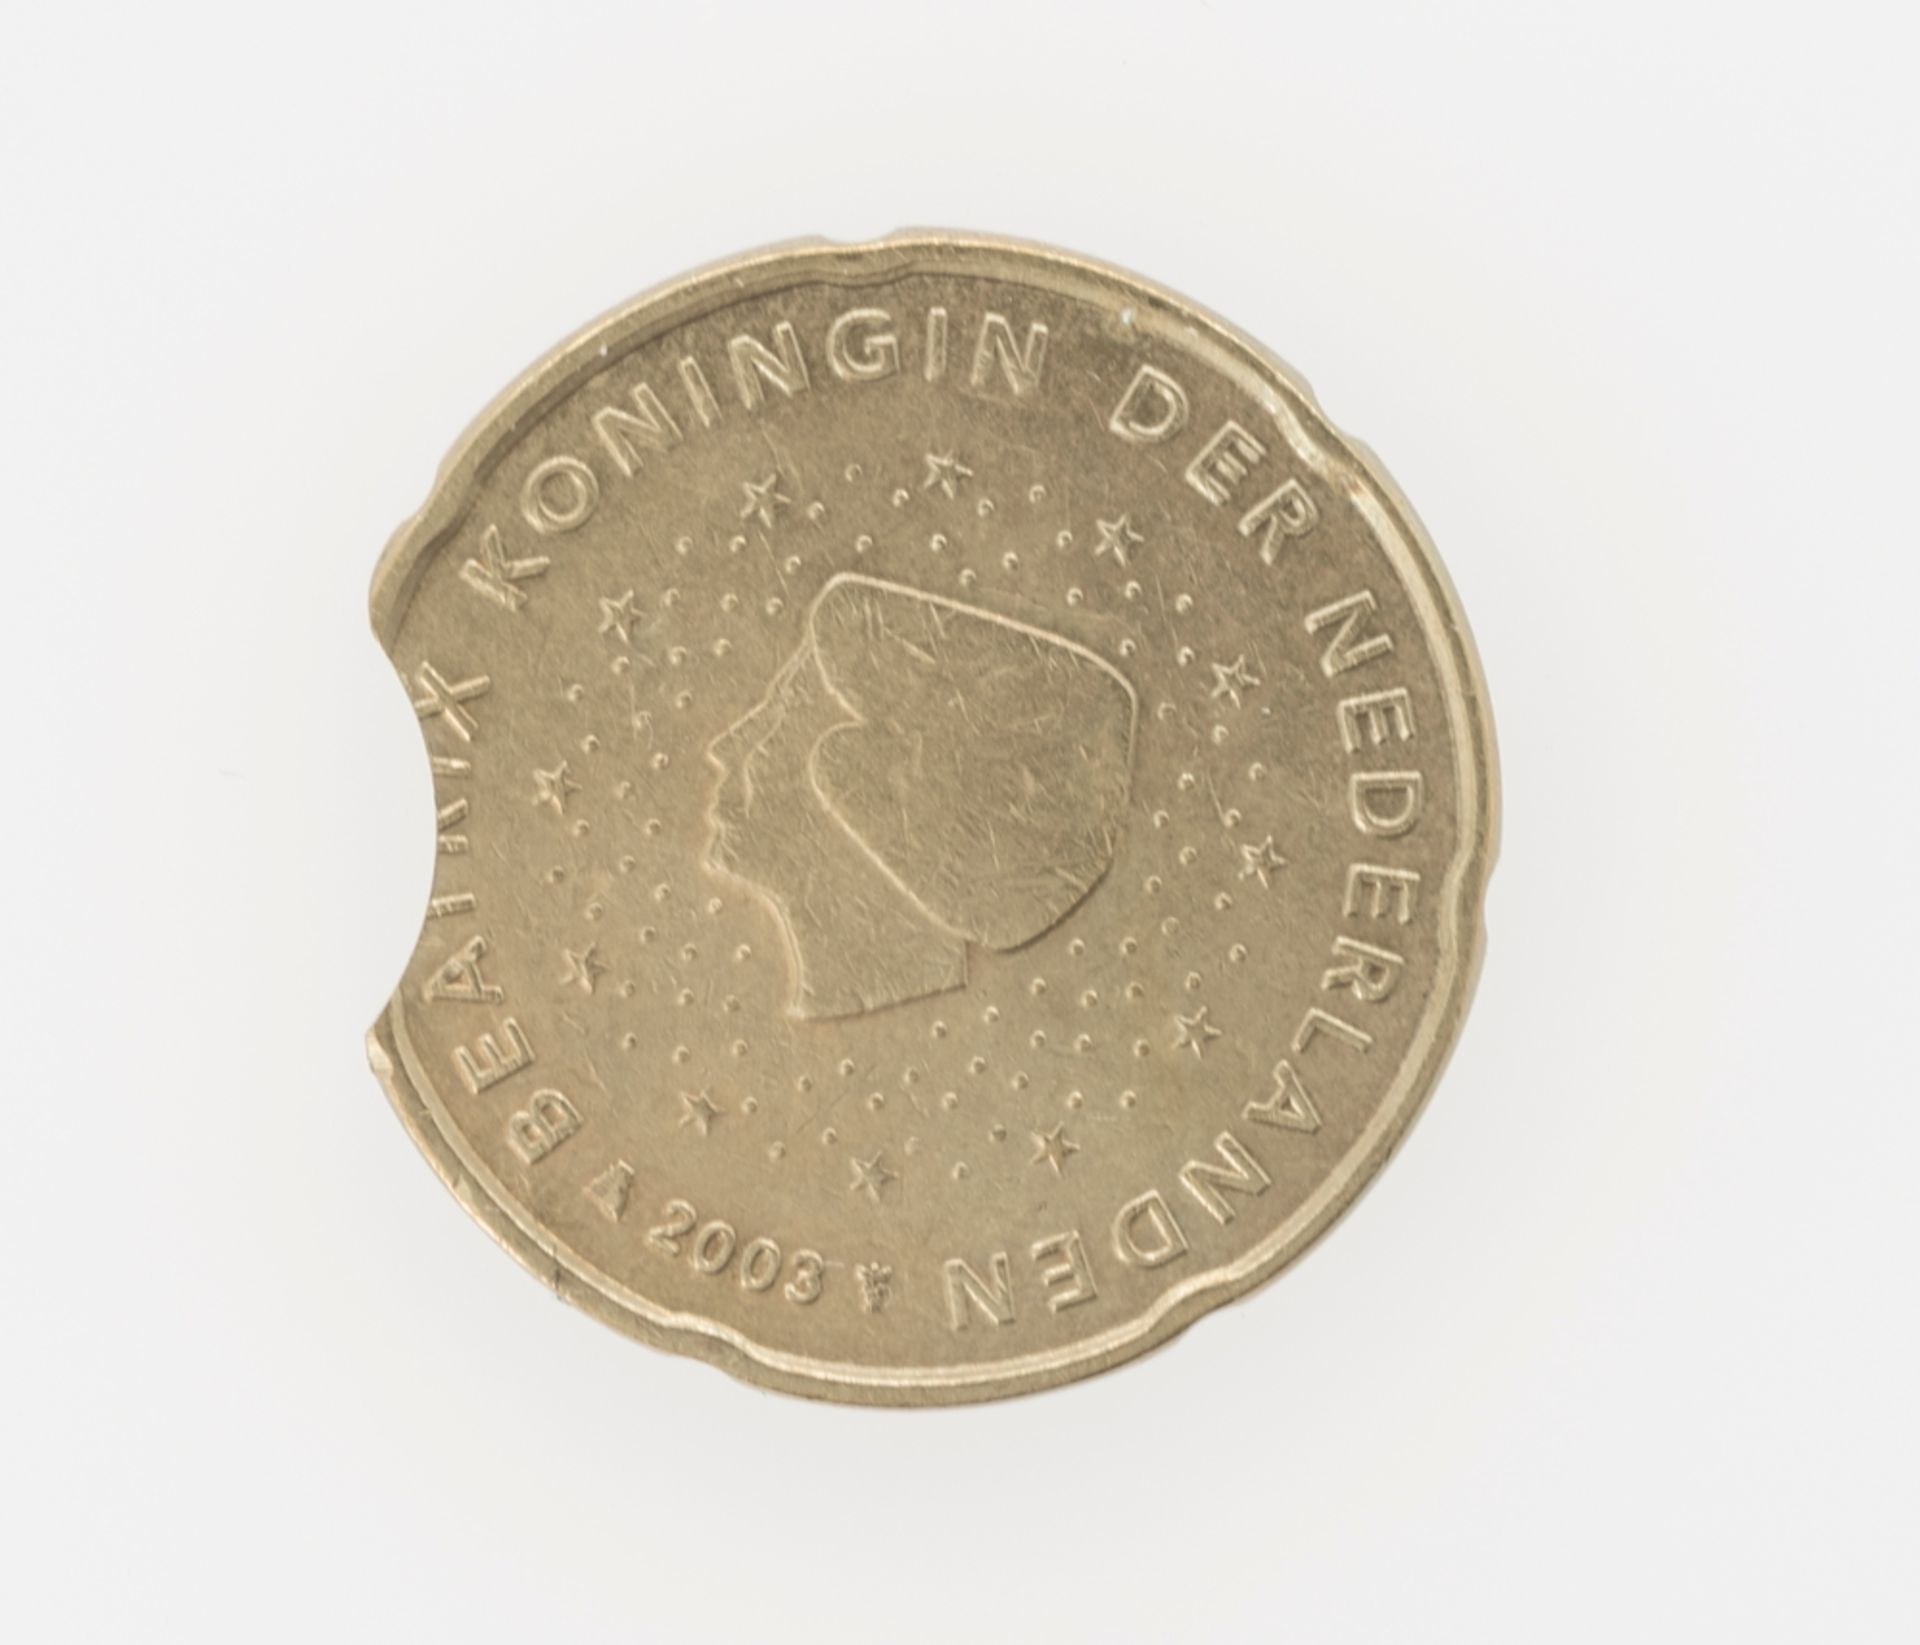 Niederlande 2003, 20 Cent - Münze Fehlprägung: Zainende. - Bild 2 aus 2